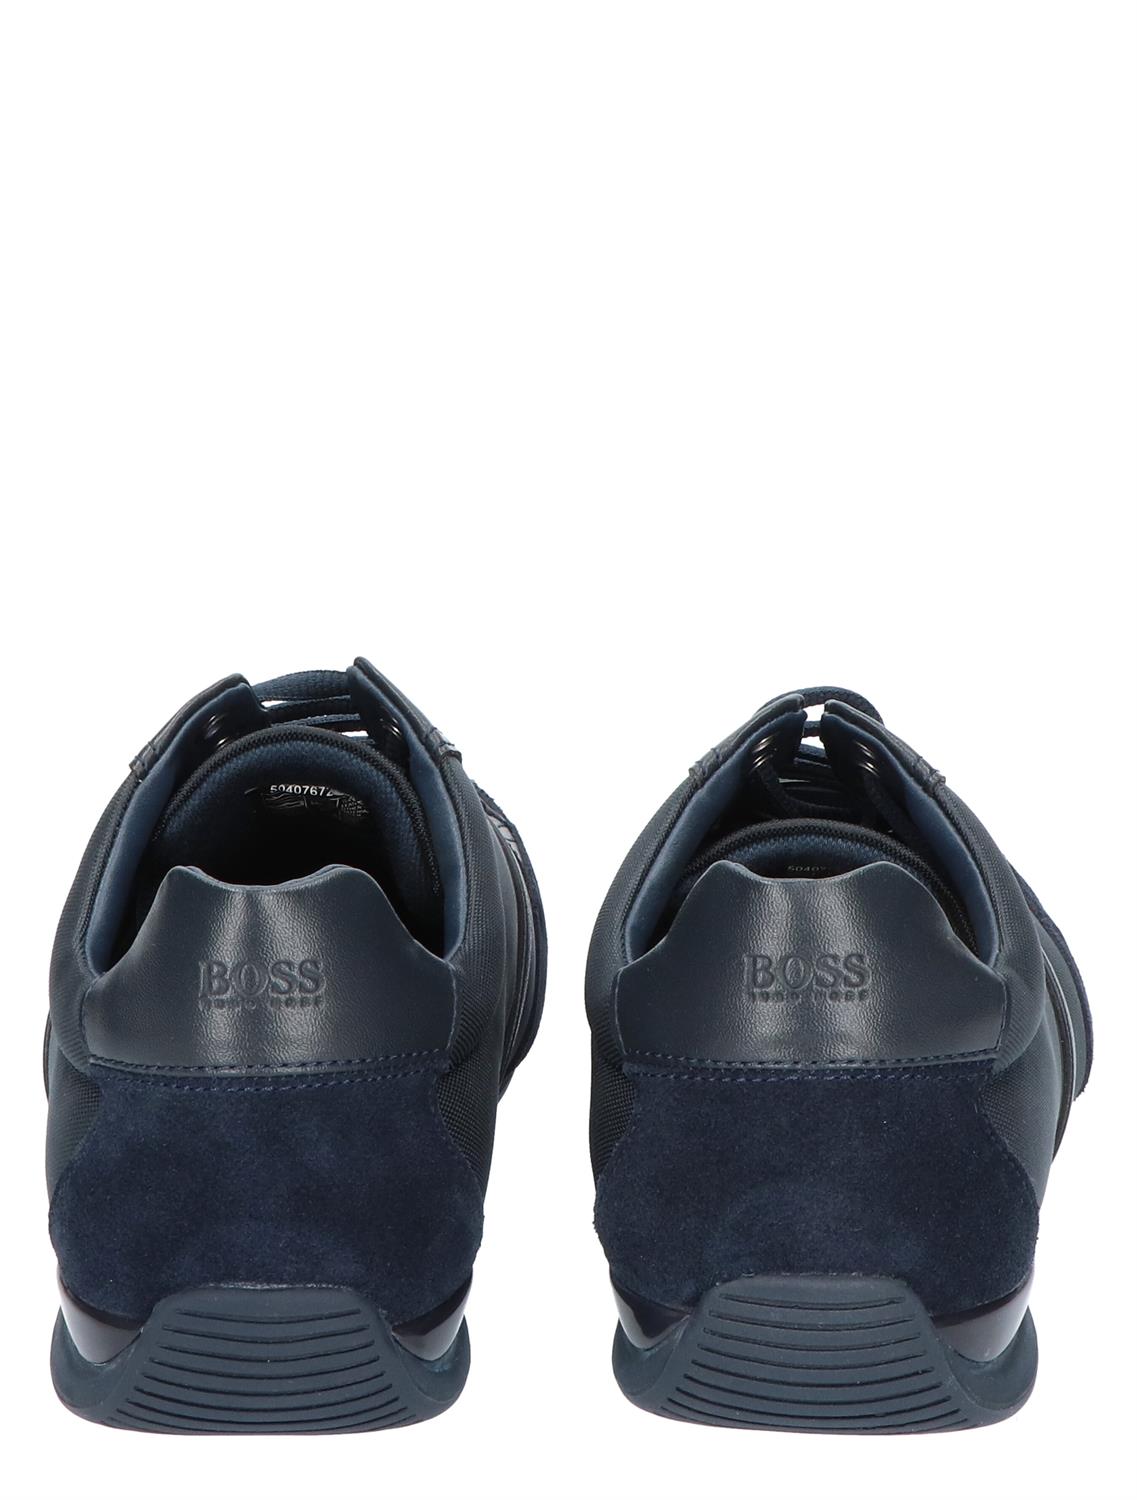 Hugo Boss Saturn Lowp MX Black - Low Sneakers - Sneakers - Nolten